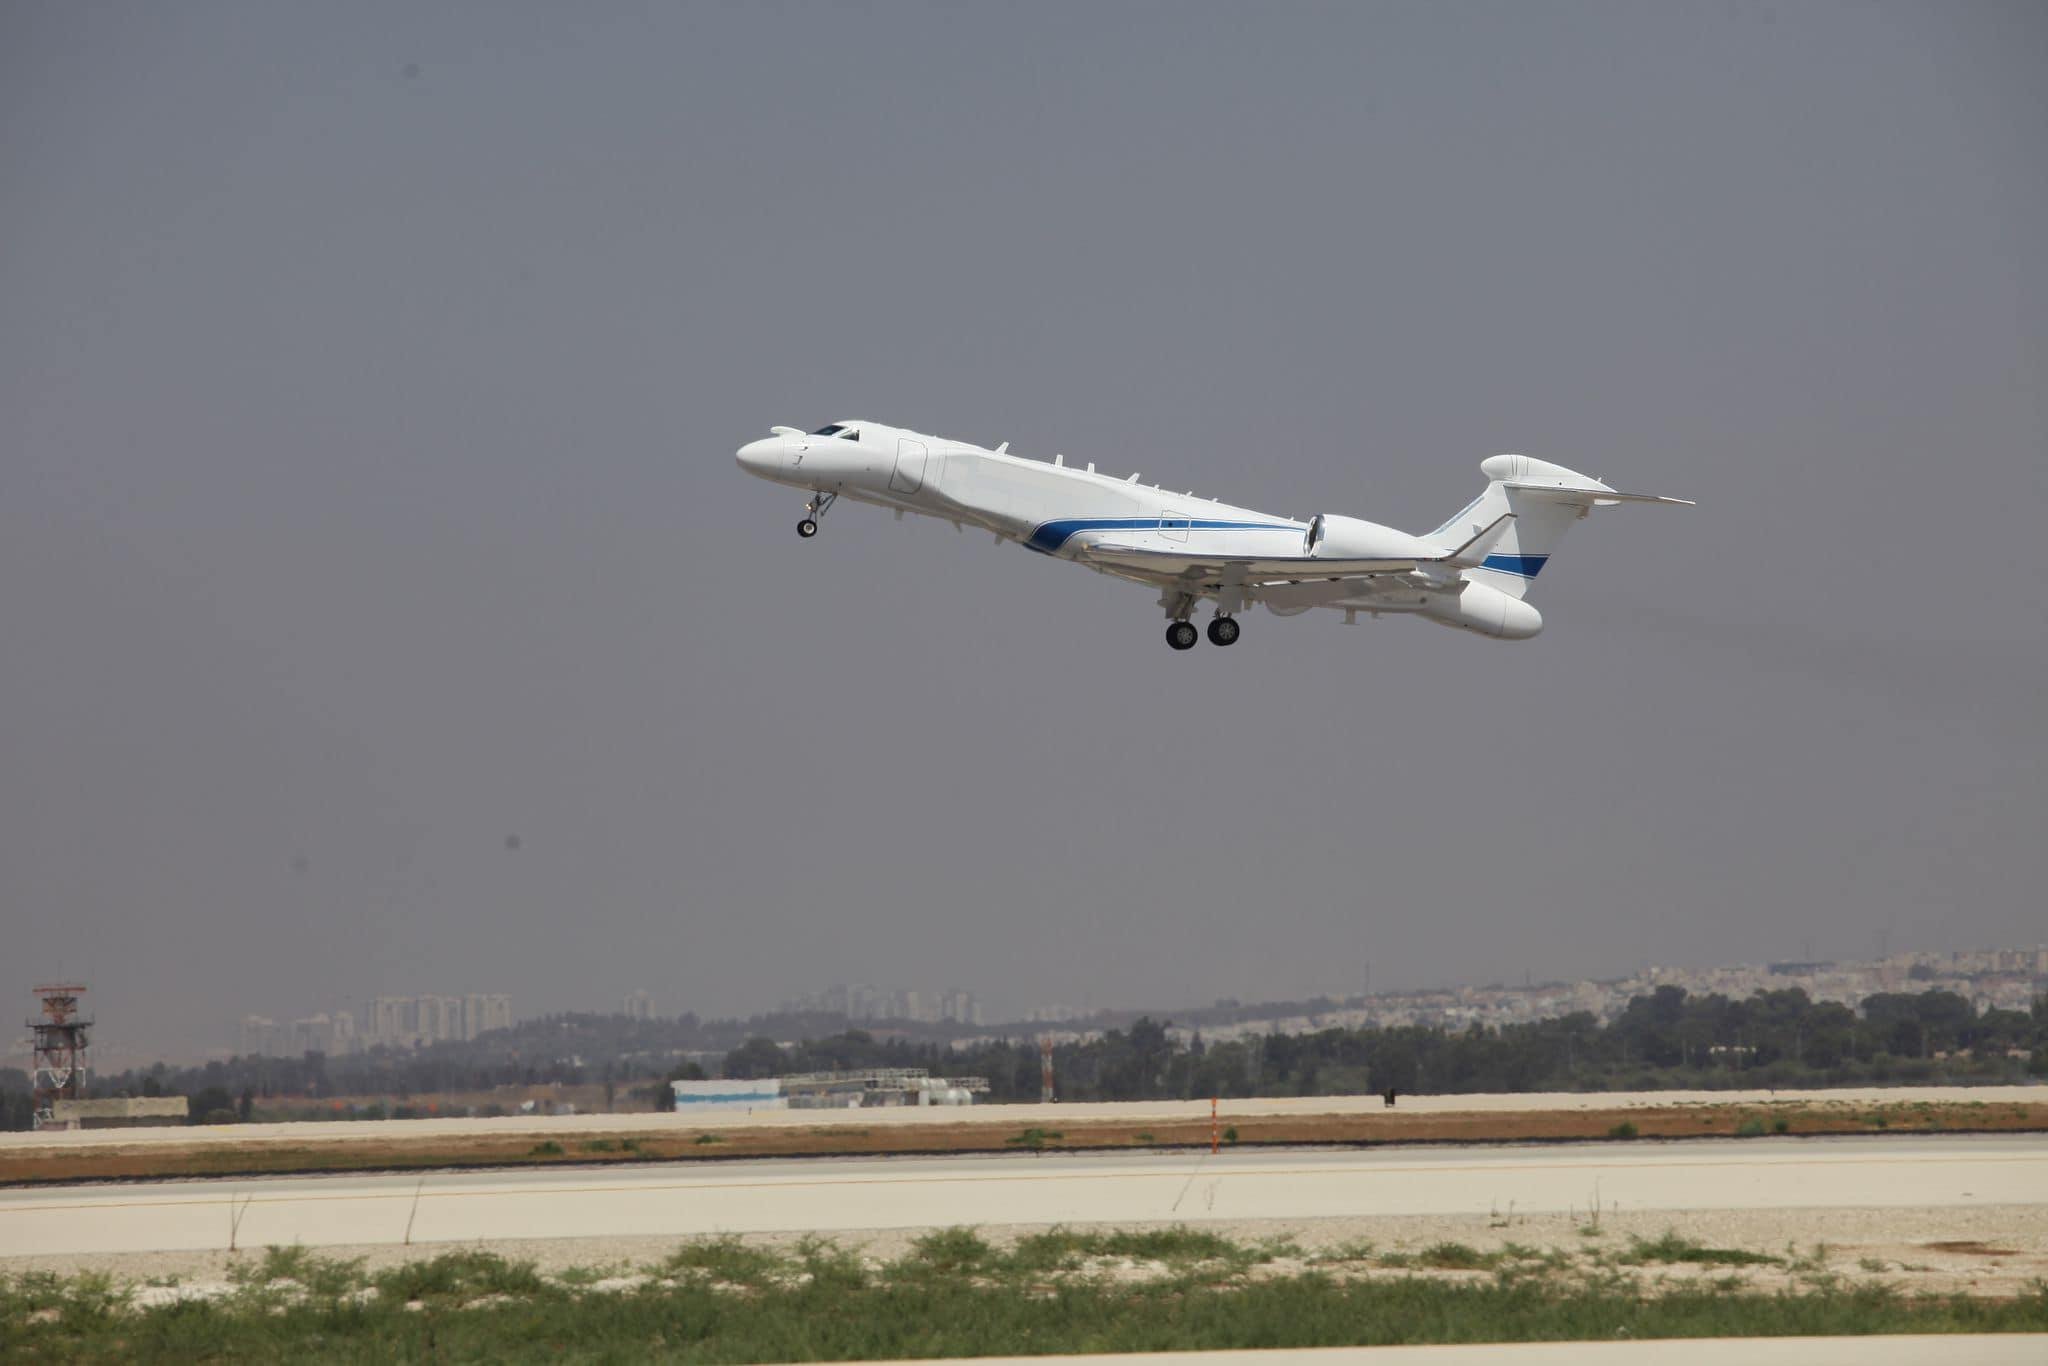 Israel oron aircraft